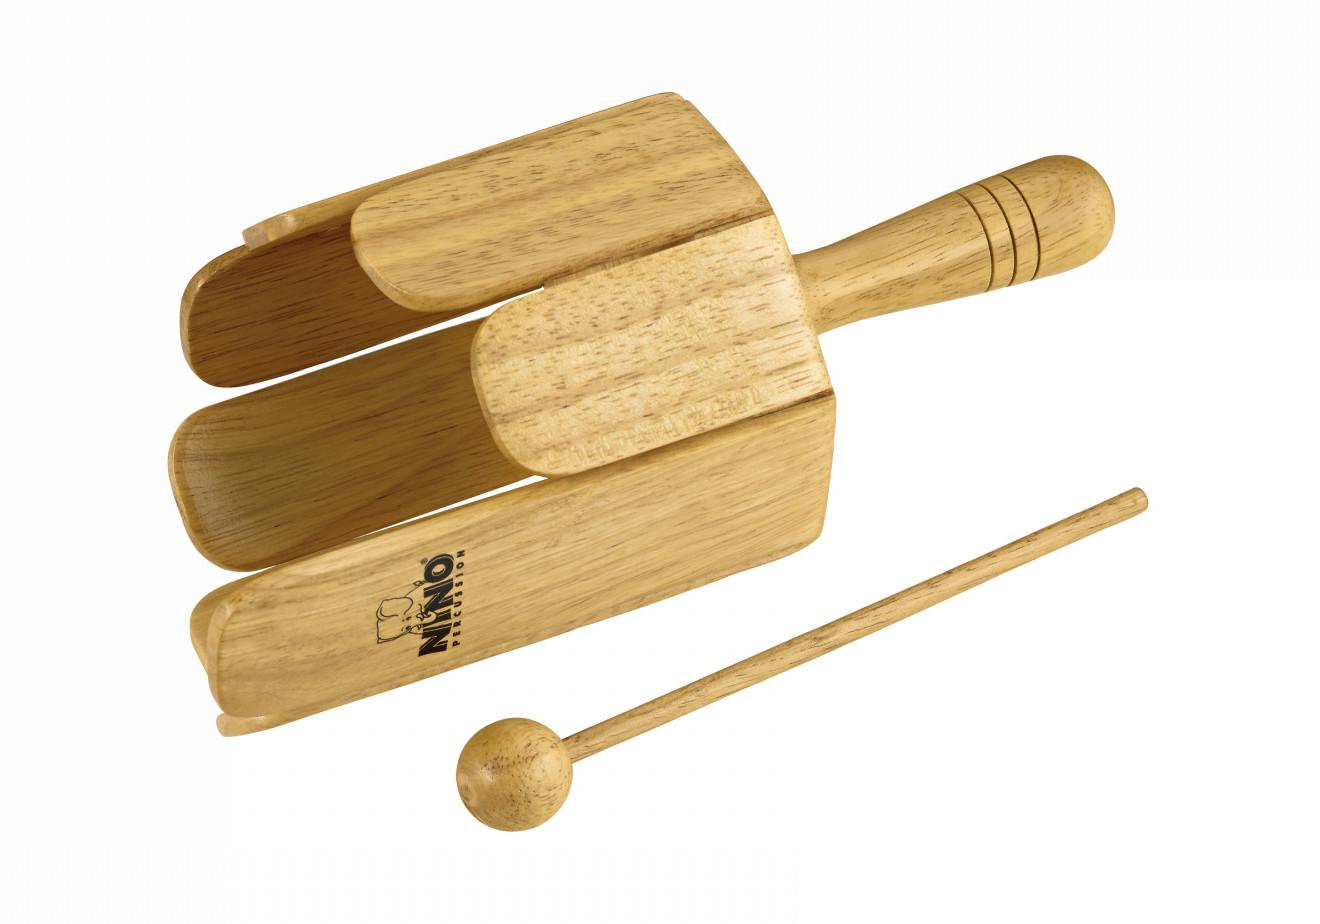 NINO Percussion NINO556 Wood Stirring Drum With Beater - Drewniany bęben listkowy z pałeczką